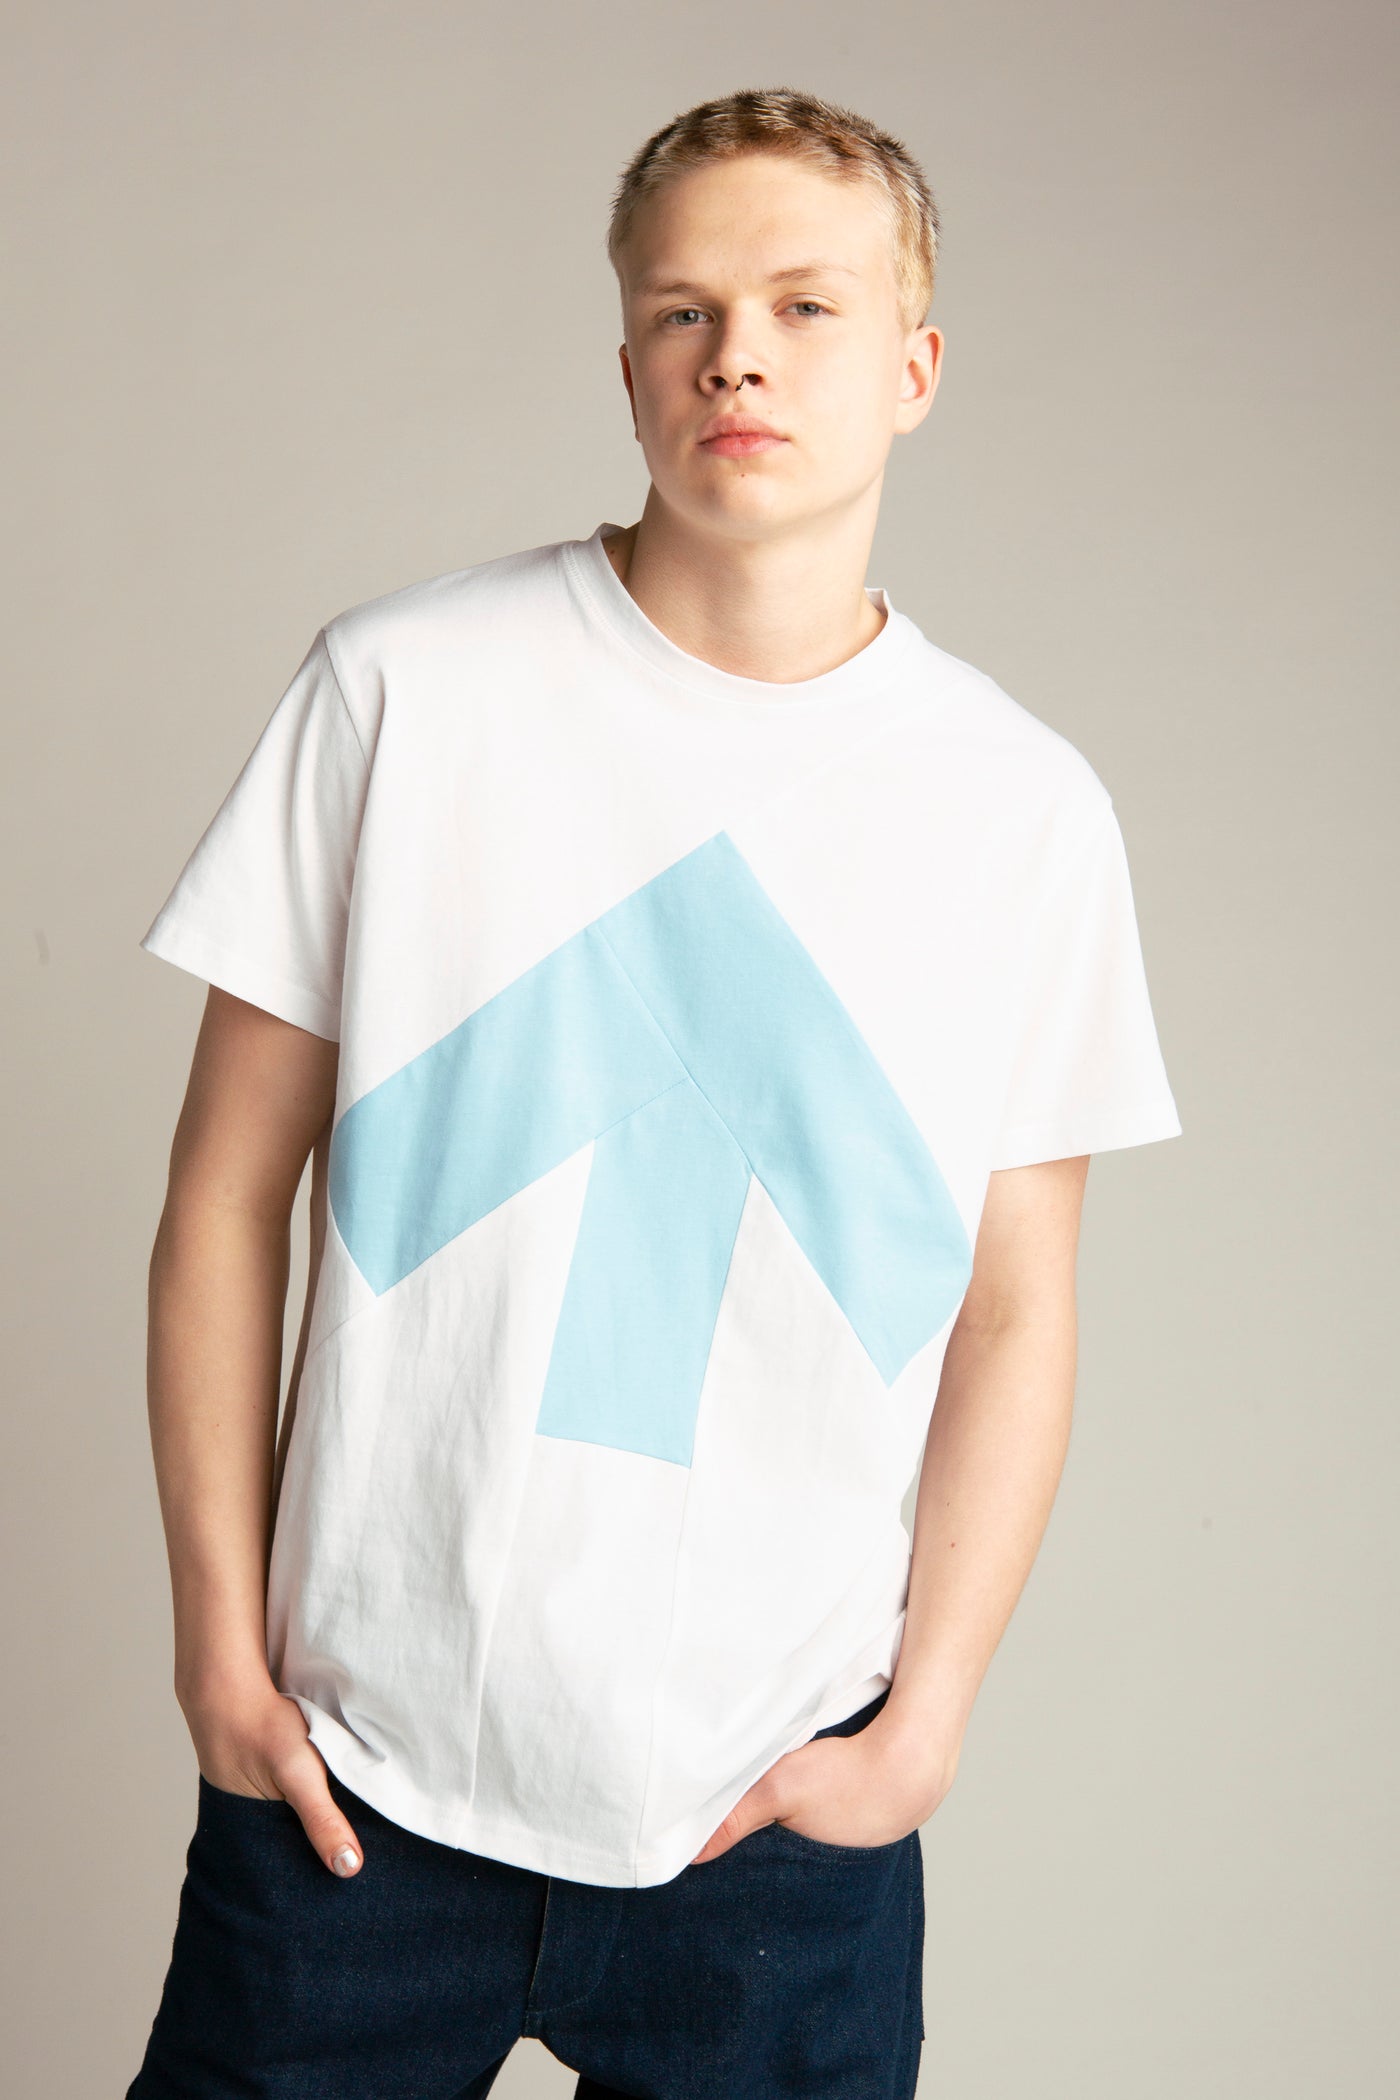 Up-shirt for men | White, light blue